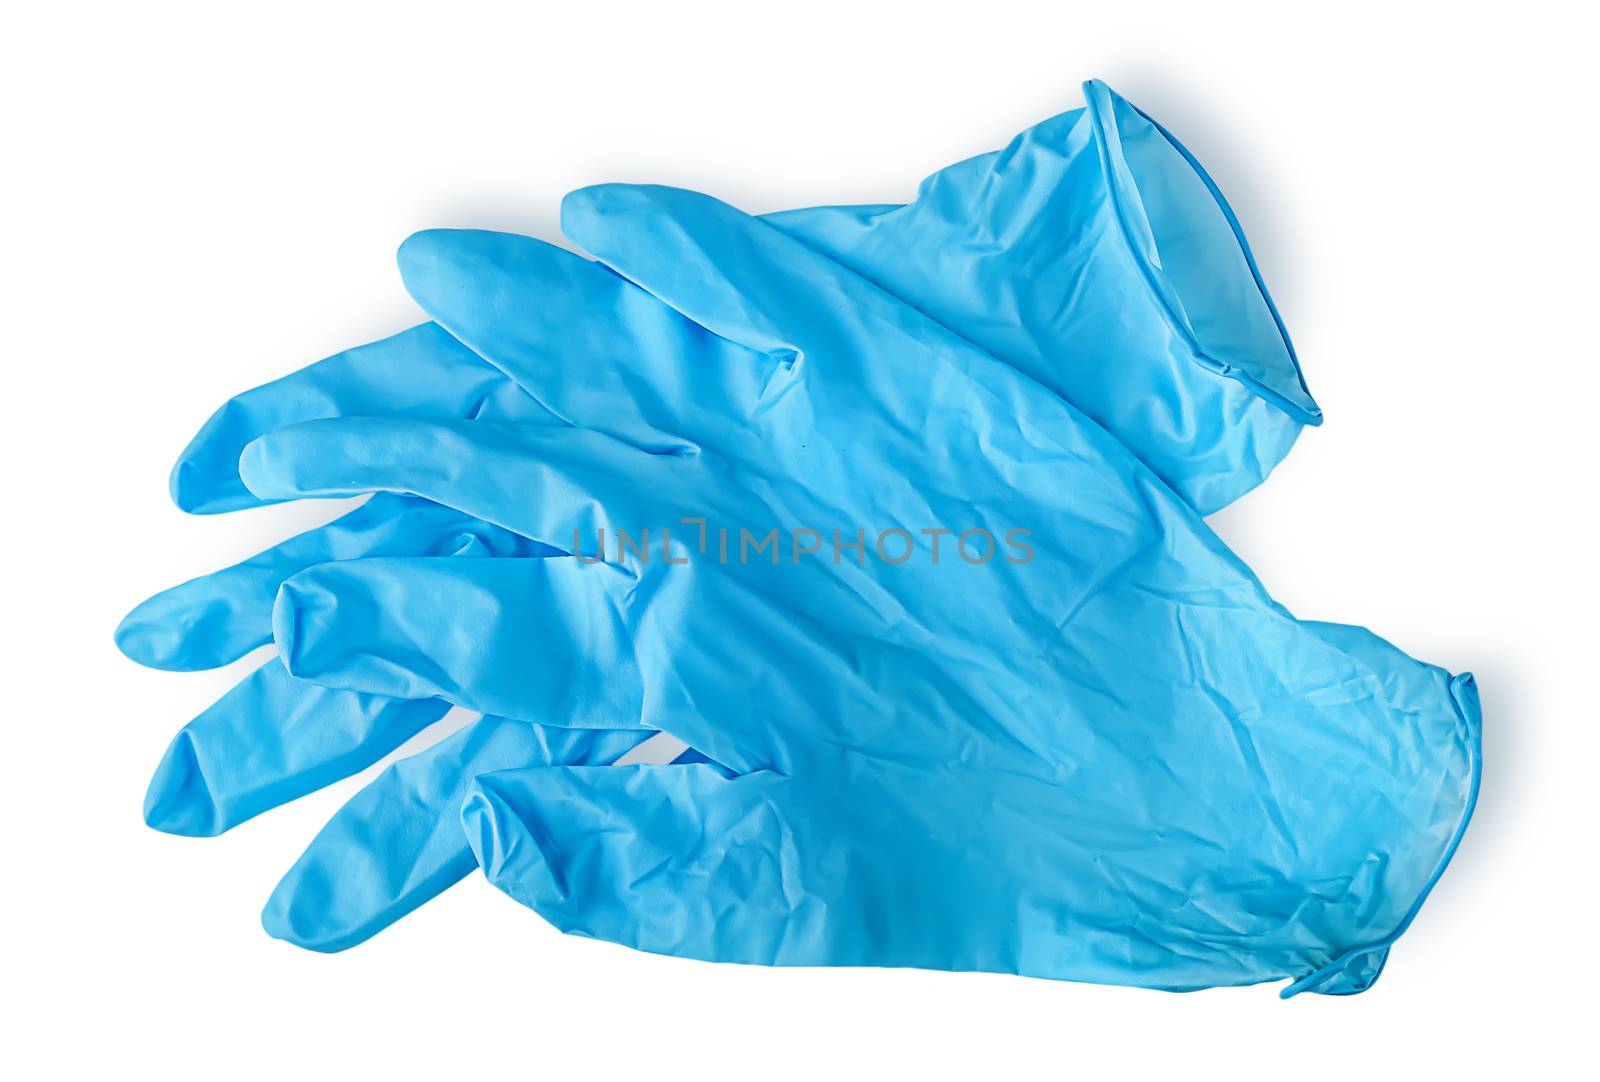 Pair blue medical gloves by Cipariss